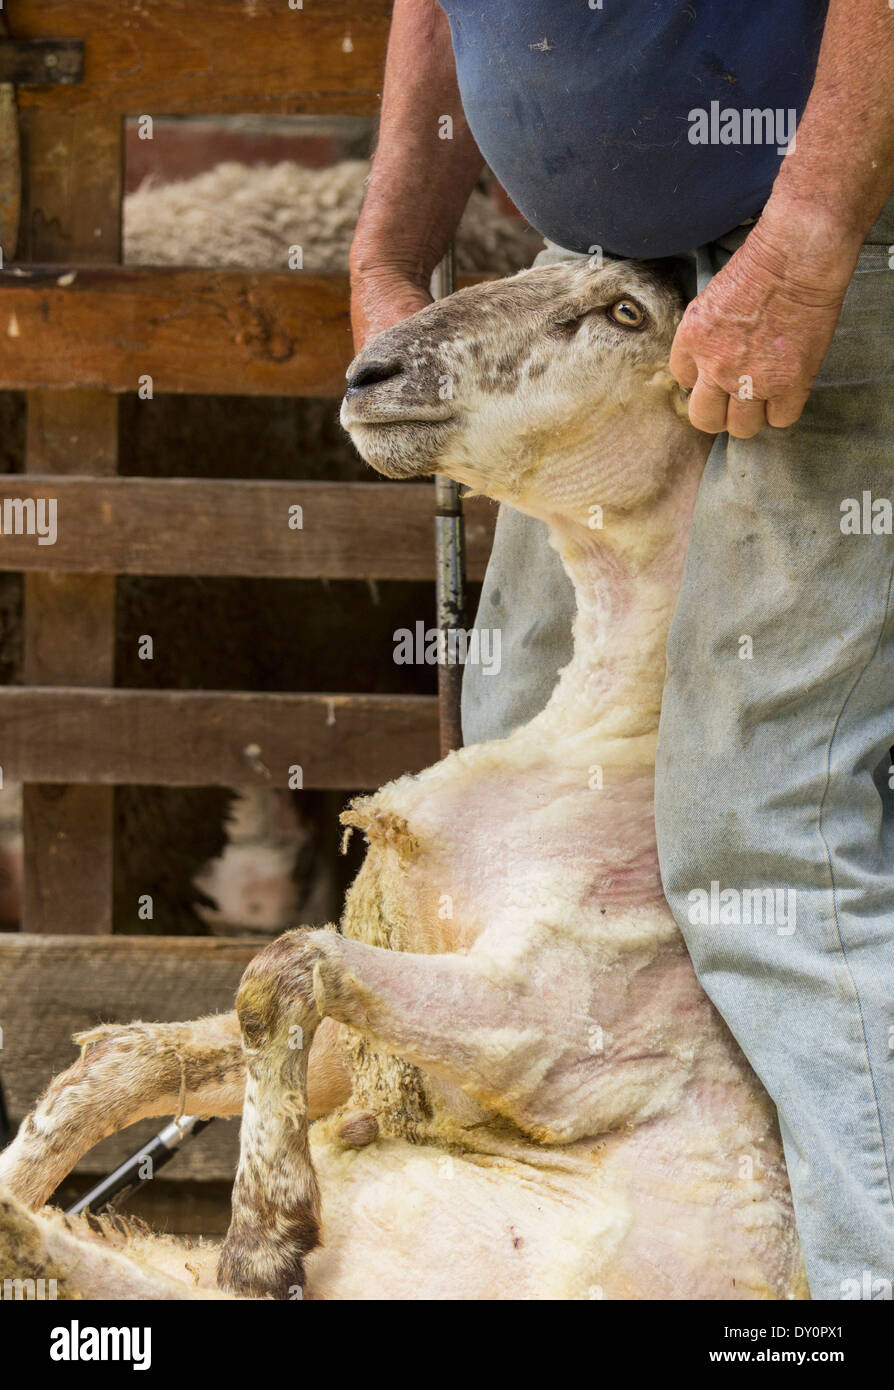 La tosatura delle pecore, Nuova Zelanda - agricoltore detiene una grande pecora dalla sua testa dopo il taglio la sua lana Foto Stock